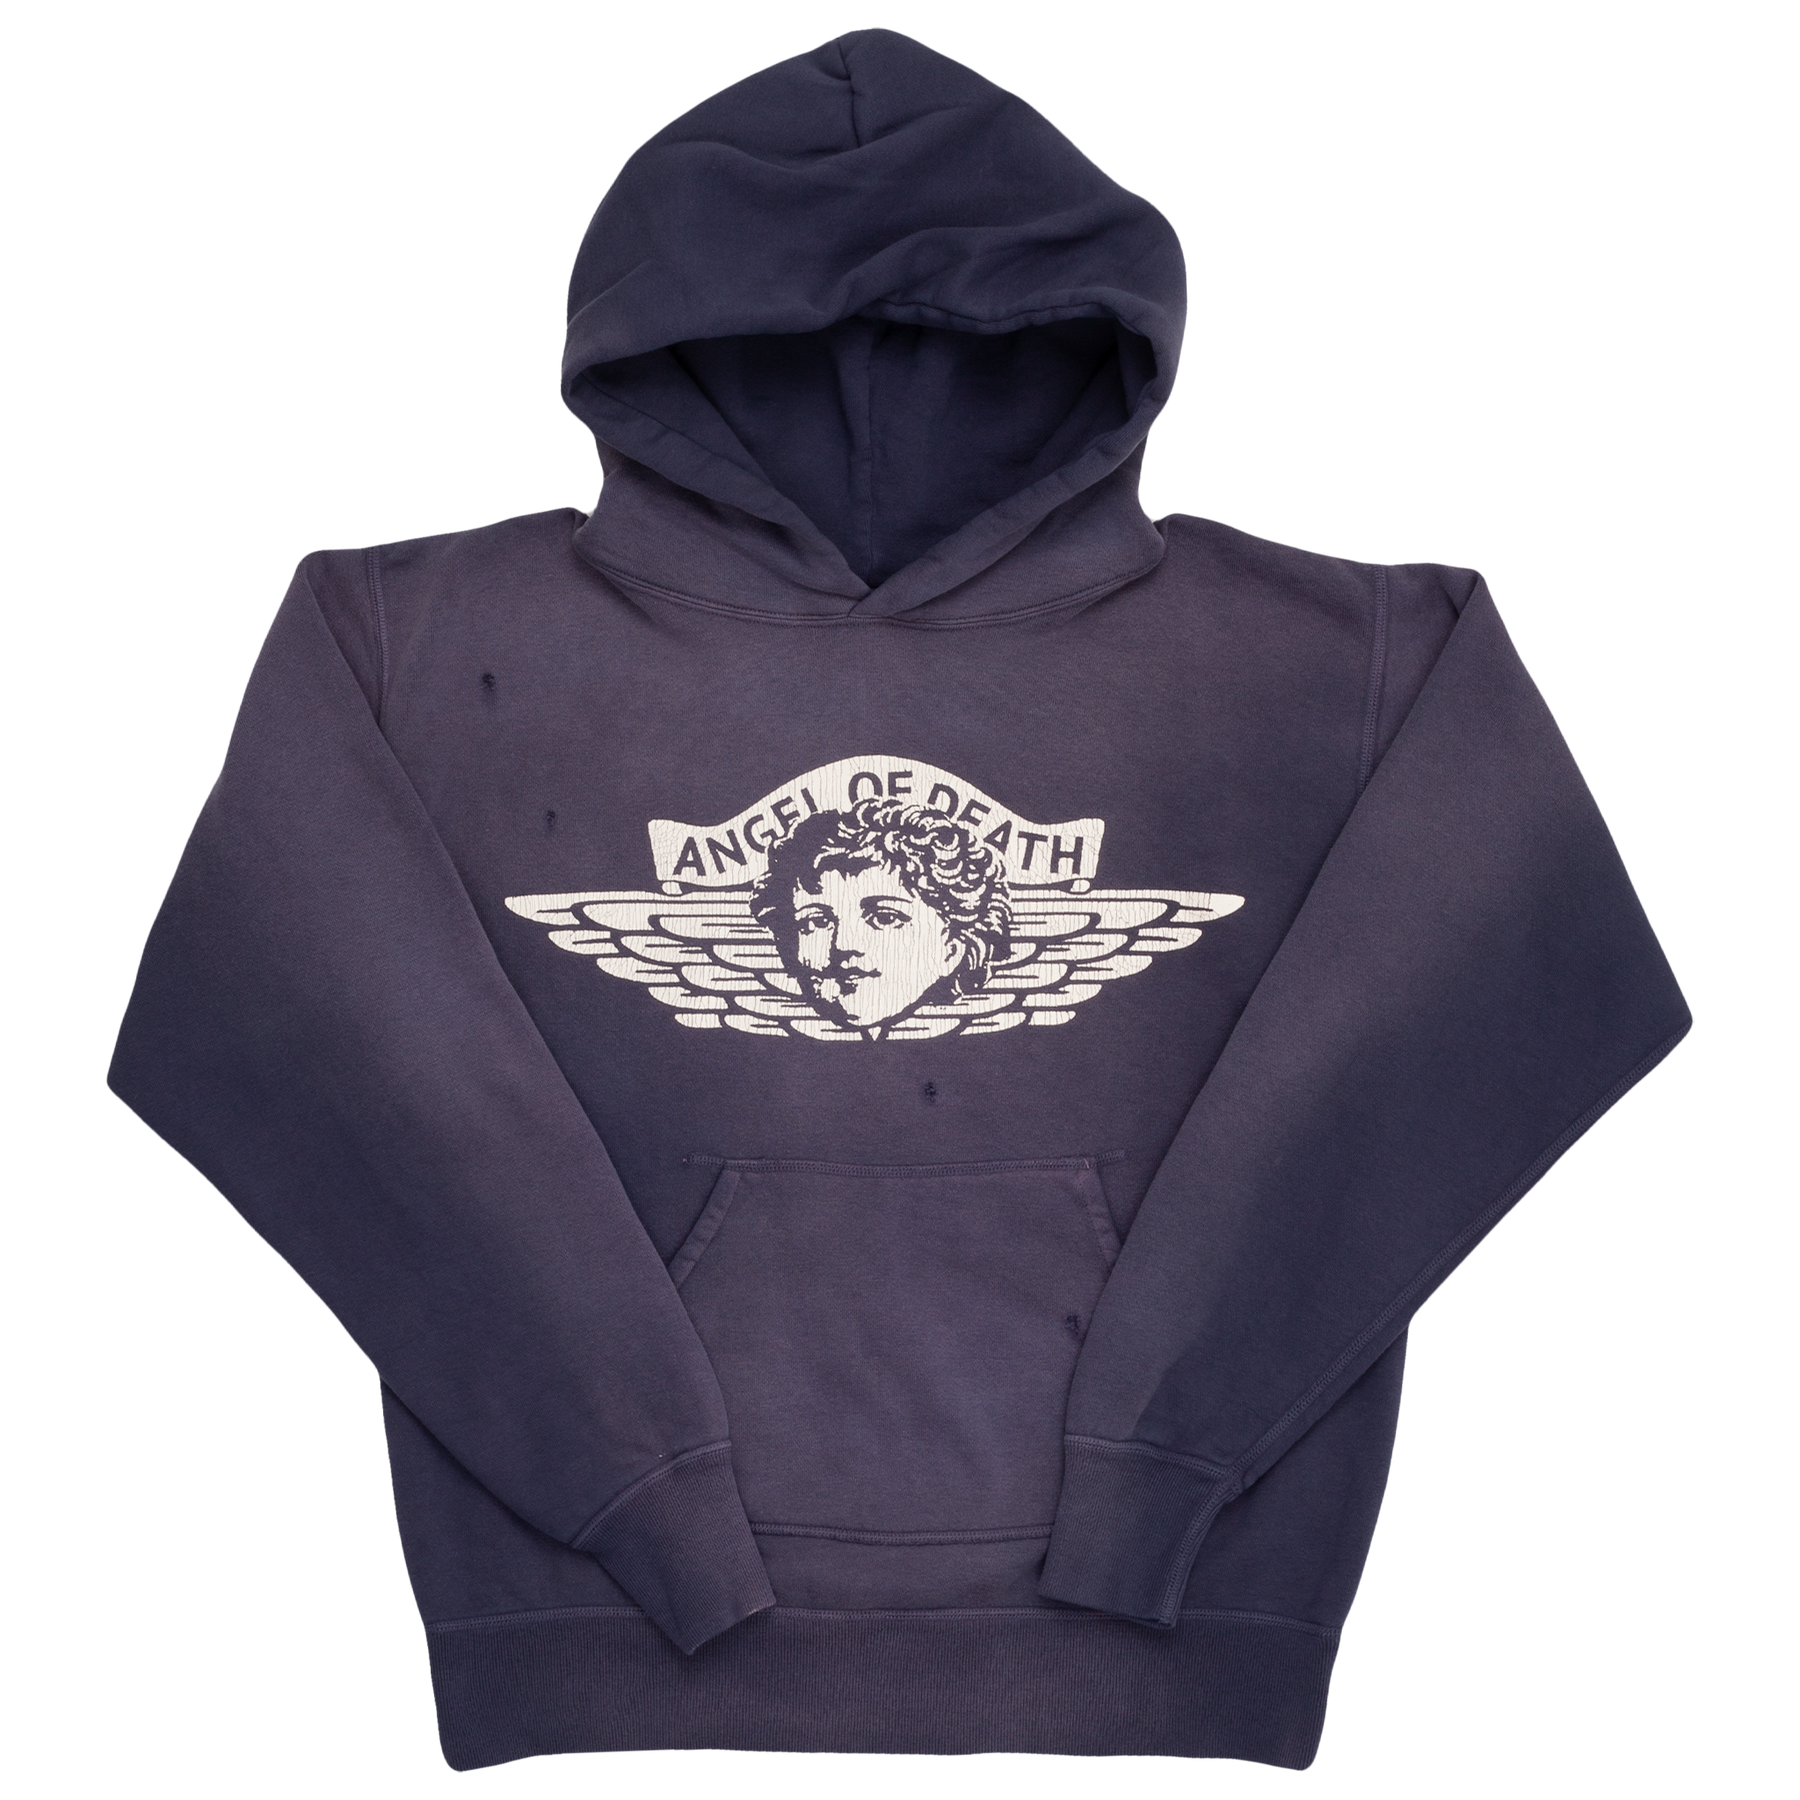 サイズ Supreme - SAINT MICHAEL angel of death hoodie XLの通販 by